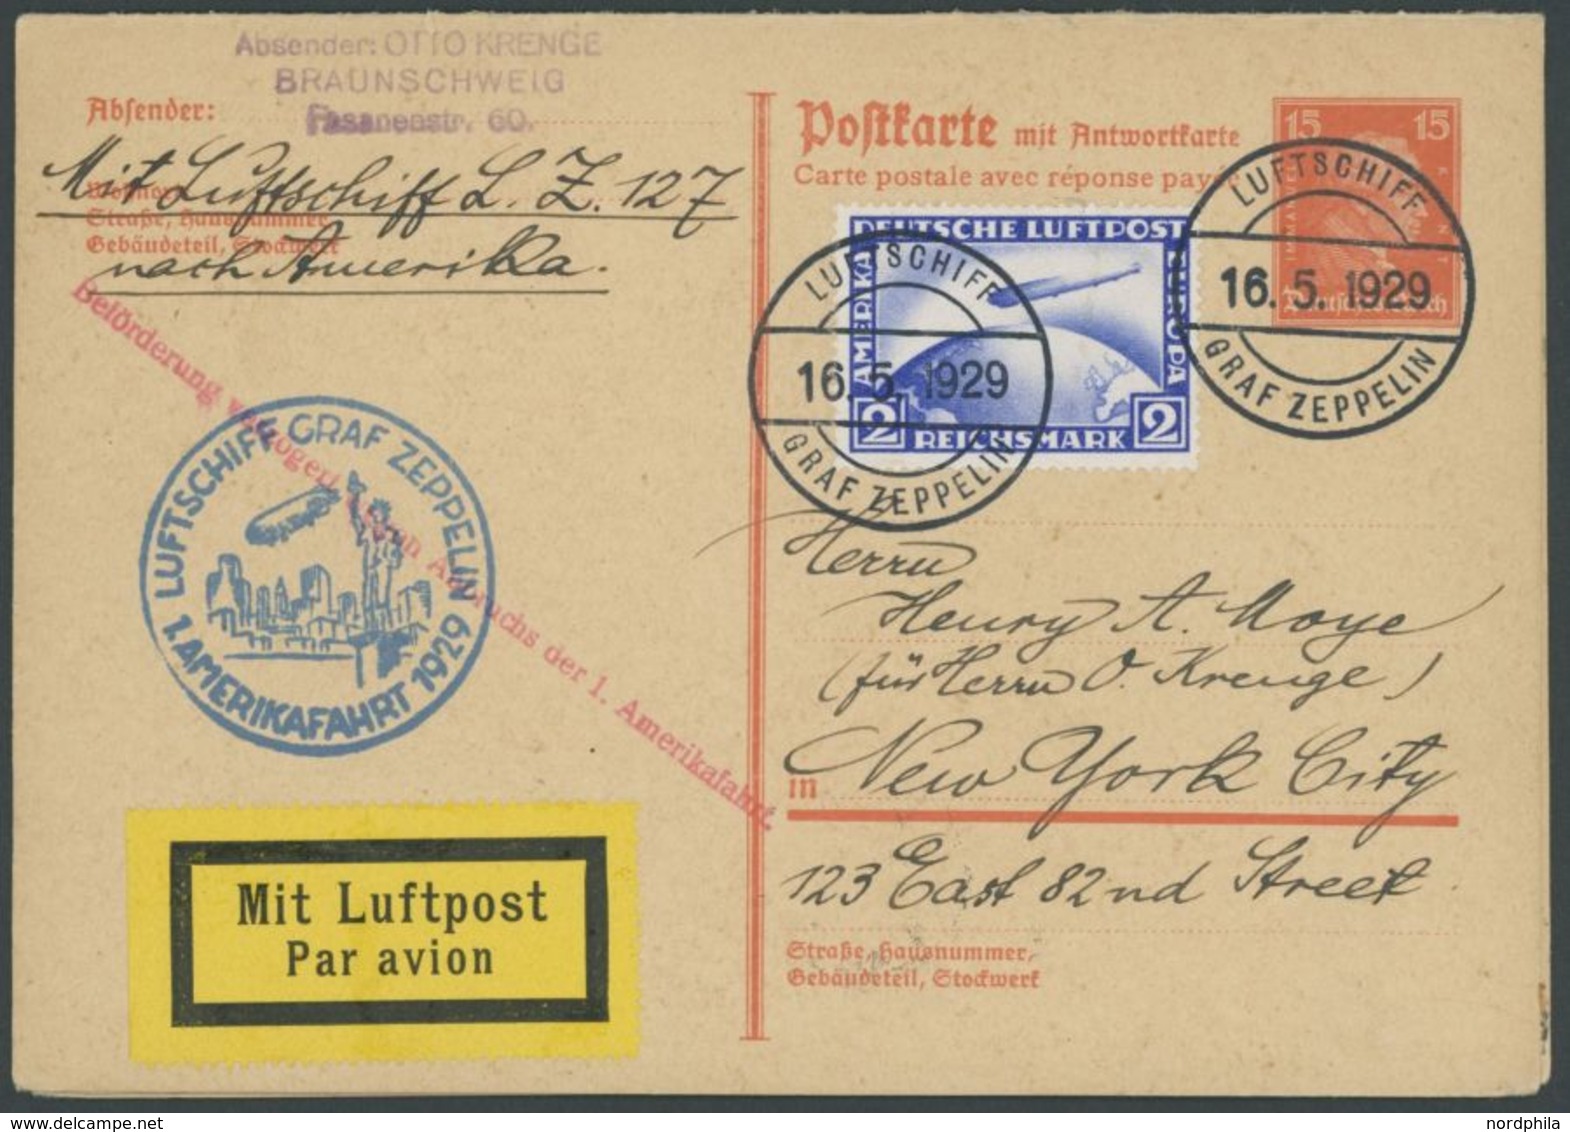 ZEPPELINPOST 26B,27A BRIEF, 1929, Amerikafahrt, 15 Pf. Ganzsachenkarte (P 173) Als Bordpost Mit 2 RM, Verzögerungsstempe - Airmail & Zeppelin